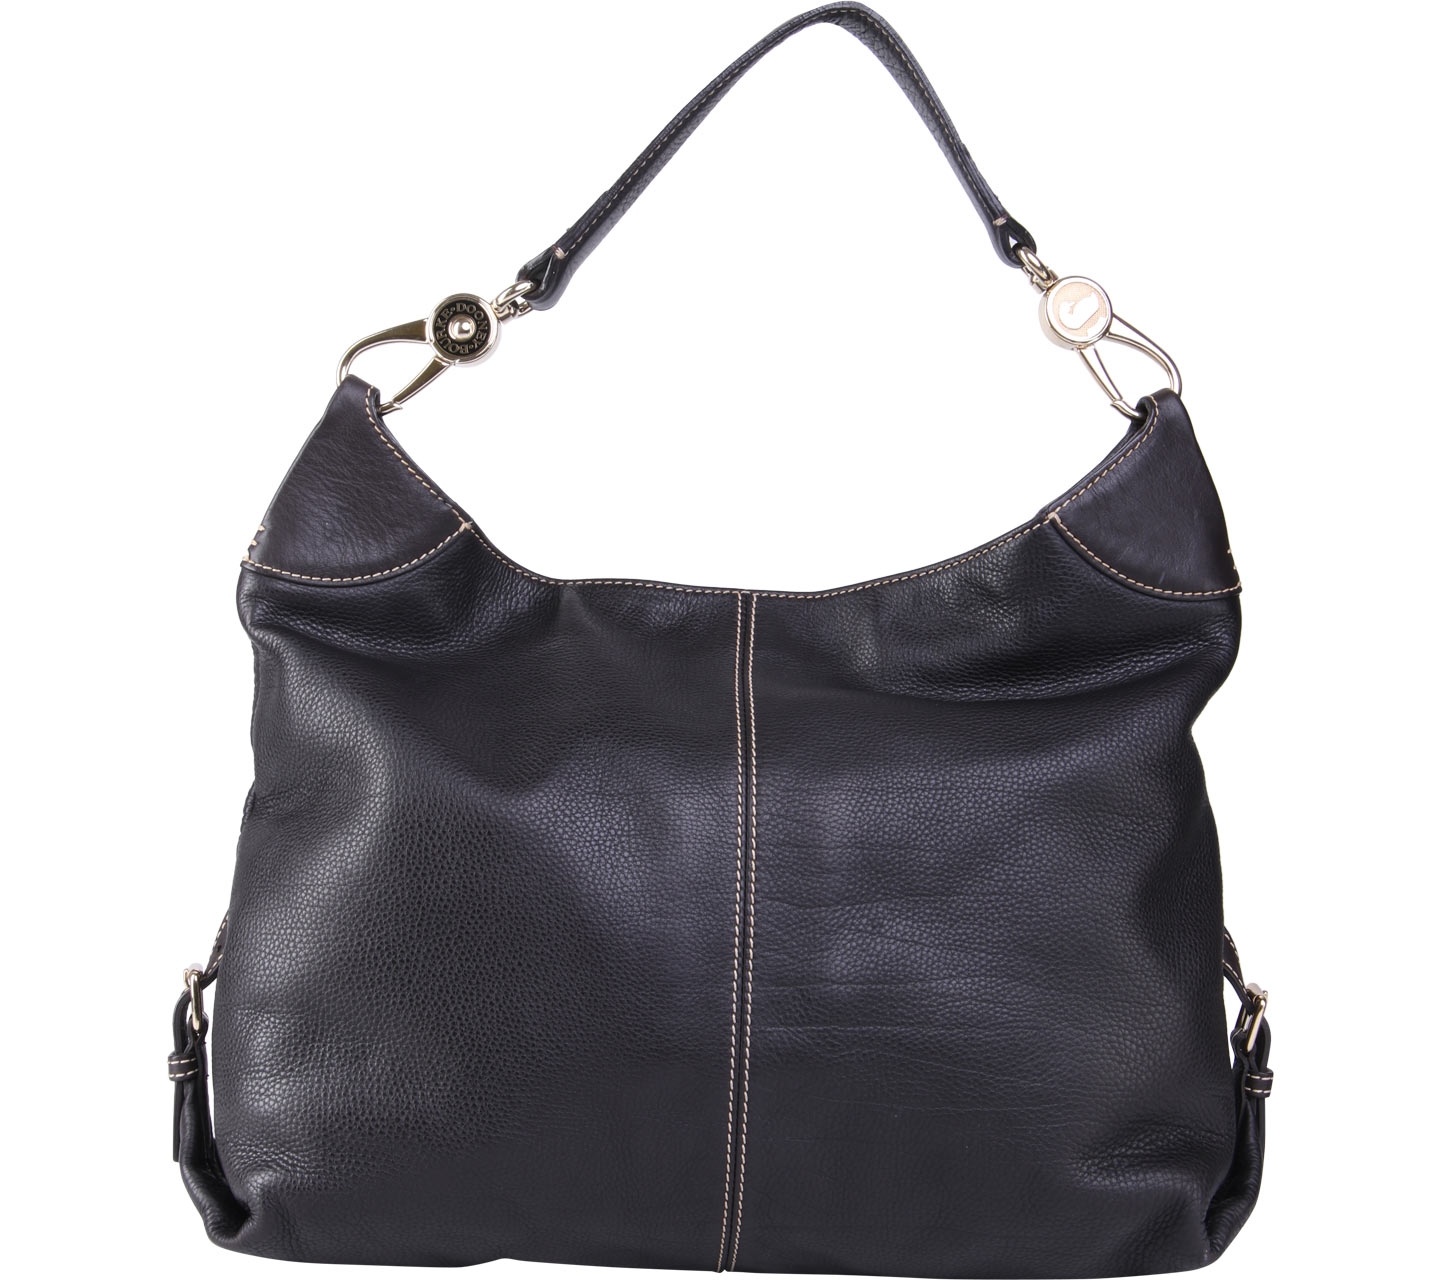 Dooney & Bourke Black Leather Shoulder Bag